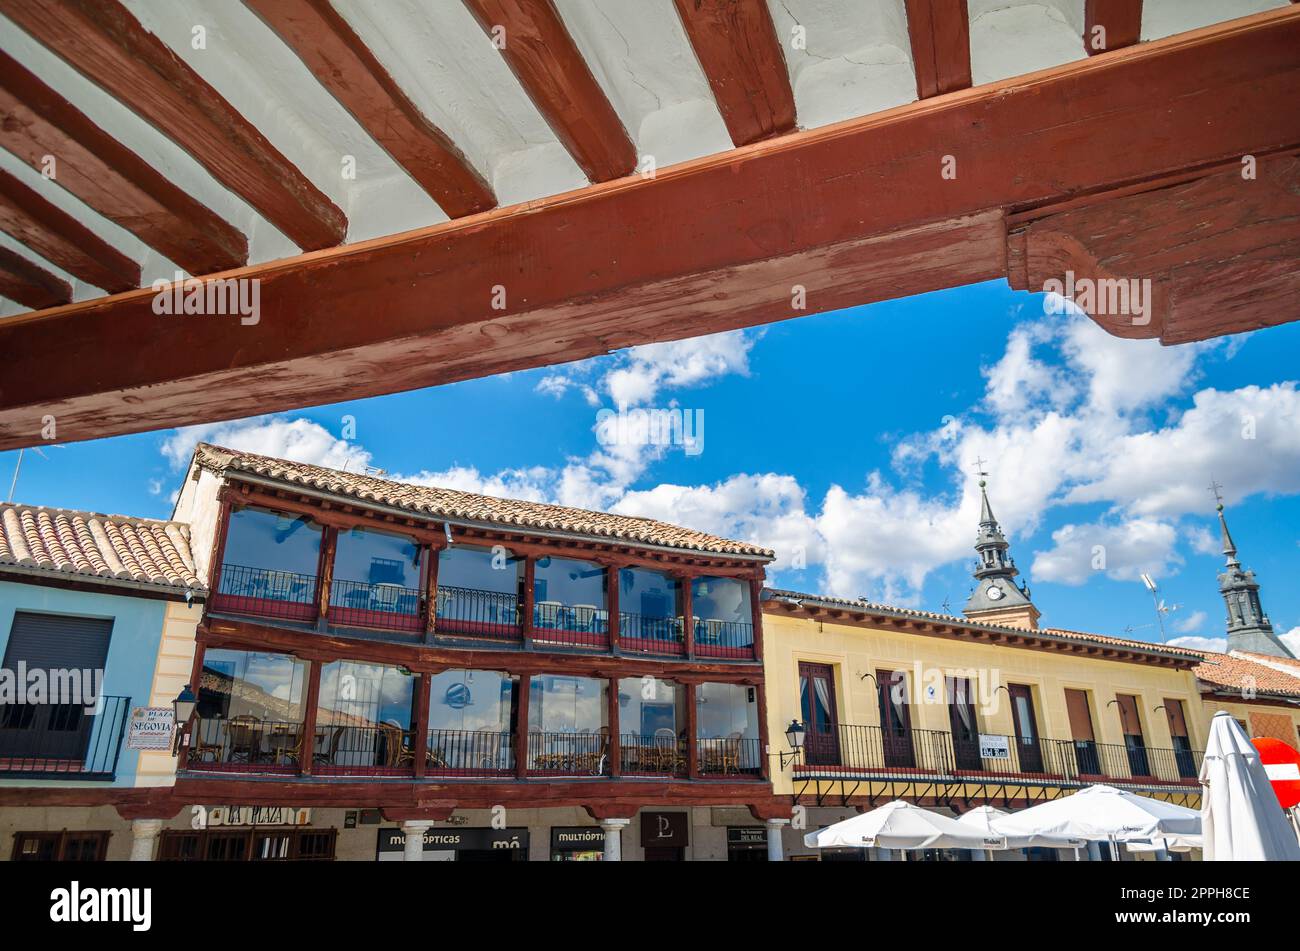 NAVALCARNERO, SPANIEN - 20. SEPTEMBER 2021: Hauptplatz (Plaza de Segovia genannt) in der Stadt Navalcarnero, Gemeinde Madrid, Spanien. Es ist ein wunderschöner mittelalterlicher kastilischer Arkadeplatz Stockfoto